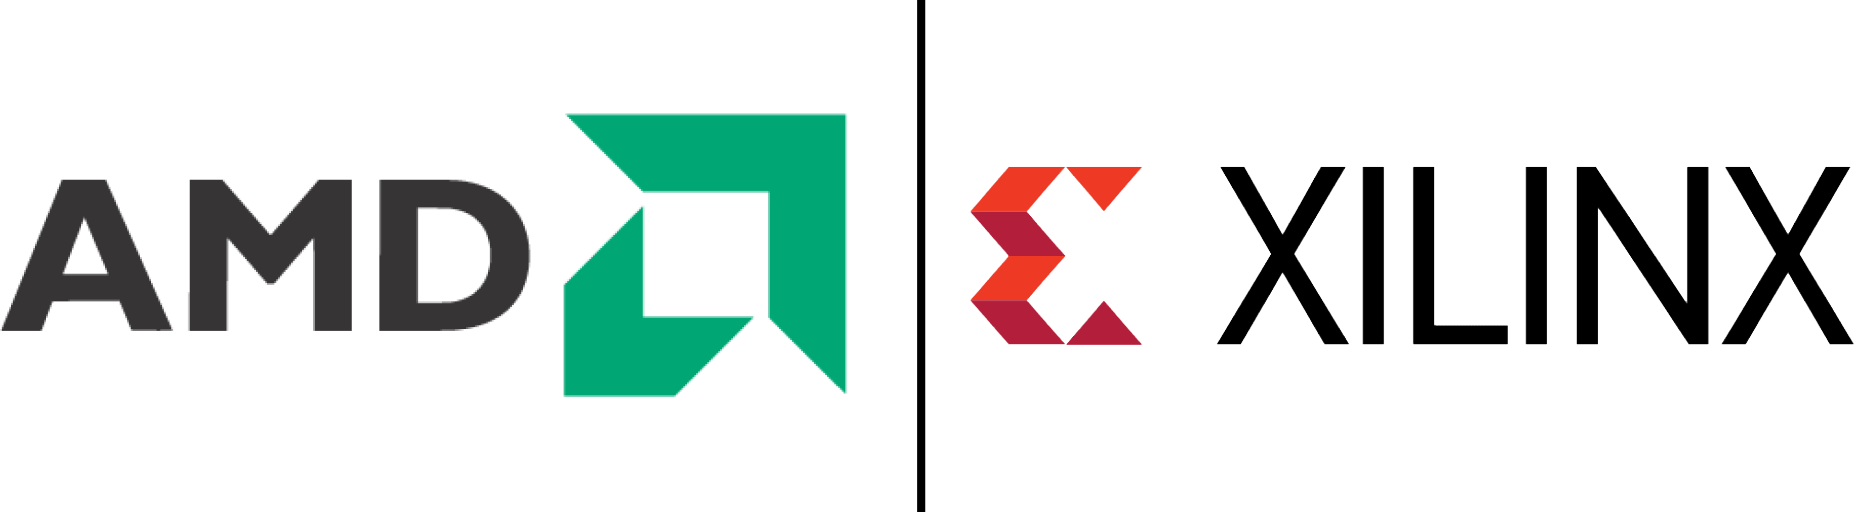 AMD XILINX